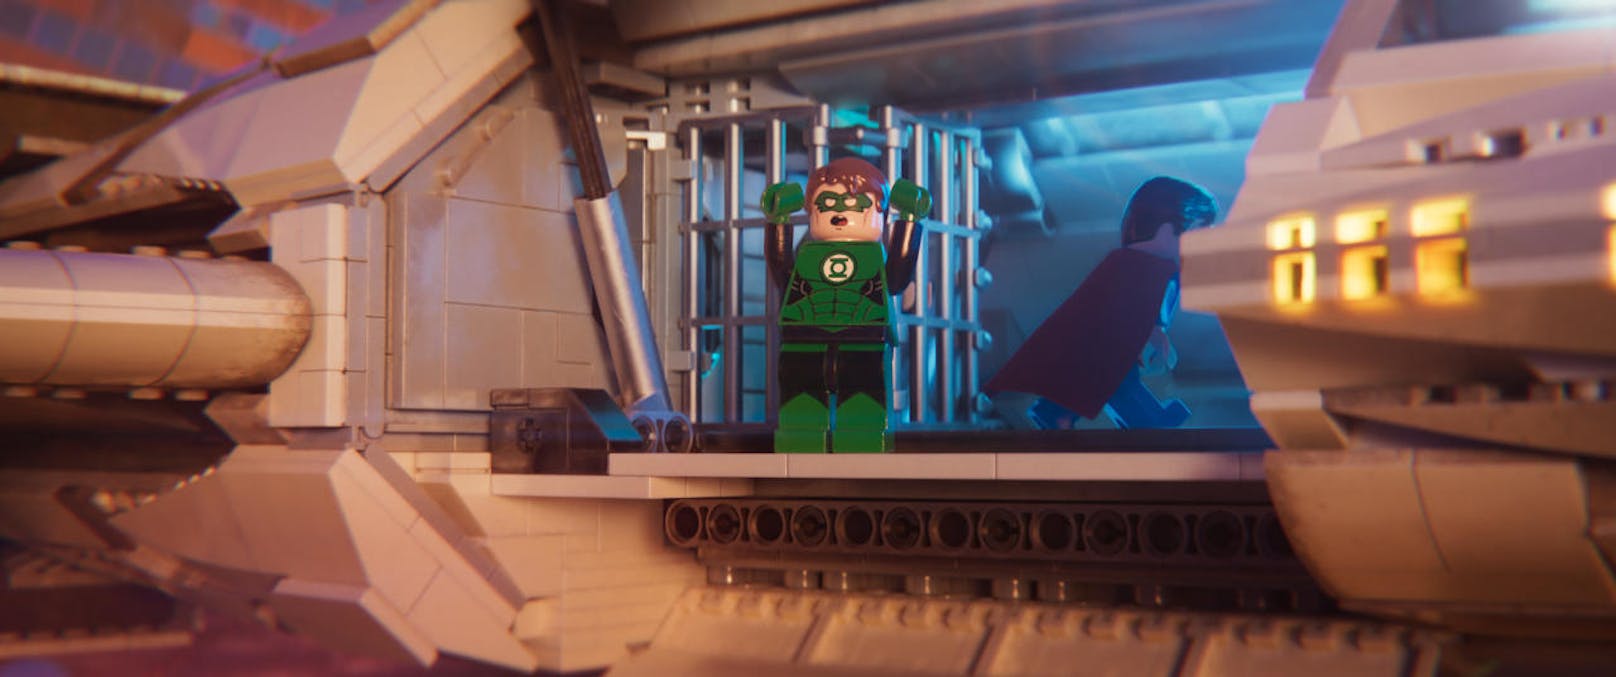 Green Lantern hält eine große Rede - bis die Raumschifftür mittendrin vor seiner Nase zugeht.